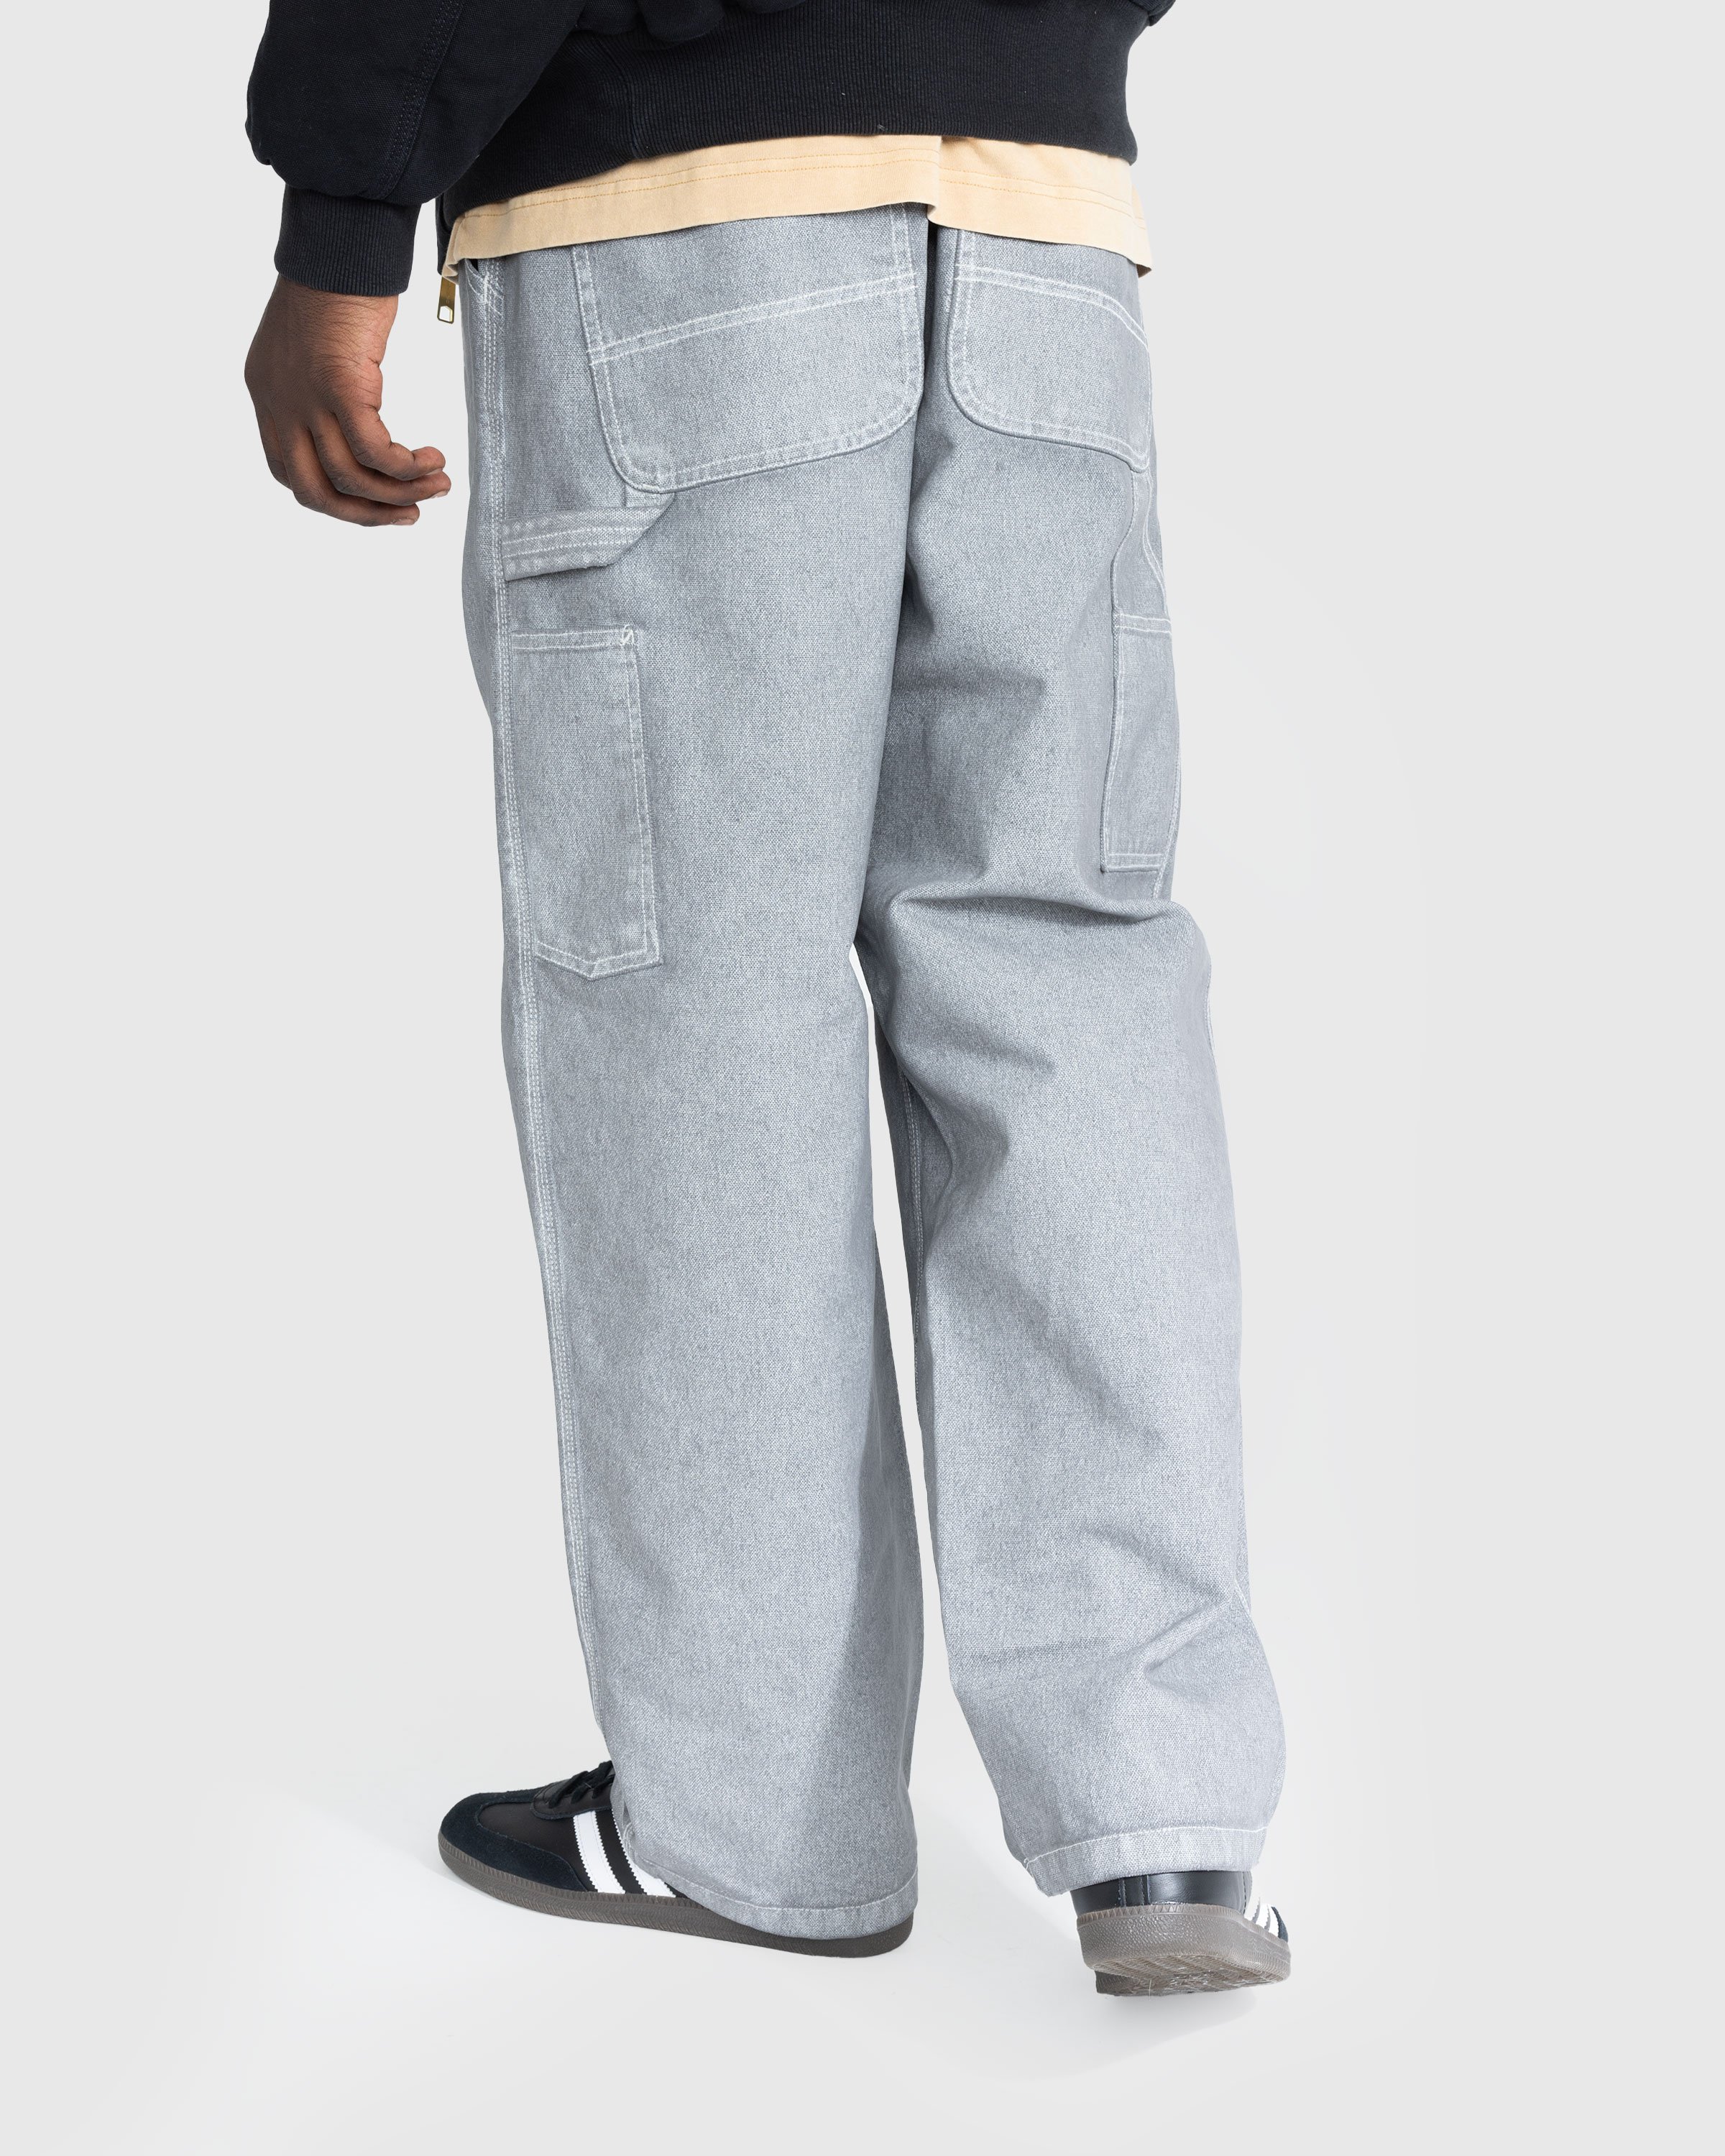 Carhartt WIP - OG Single Knee Pant Wax/Blacksmith/Stone Washed - Clothing - Grey - Image 3